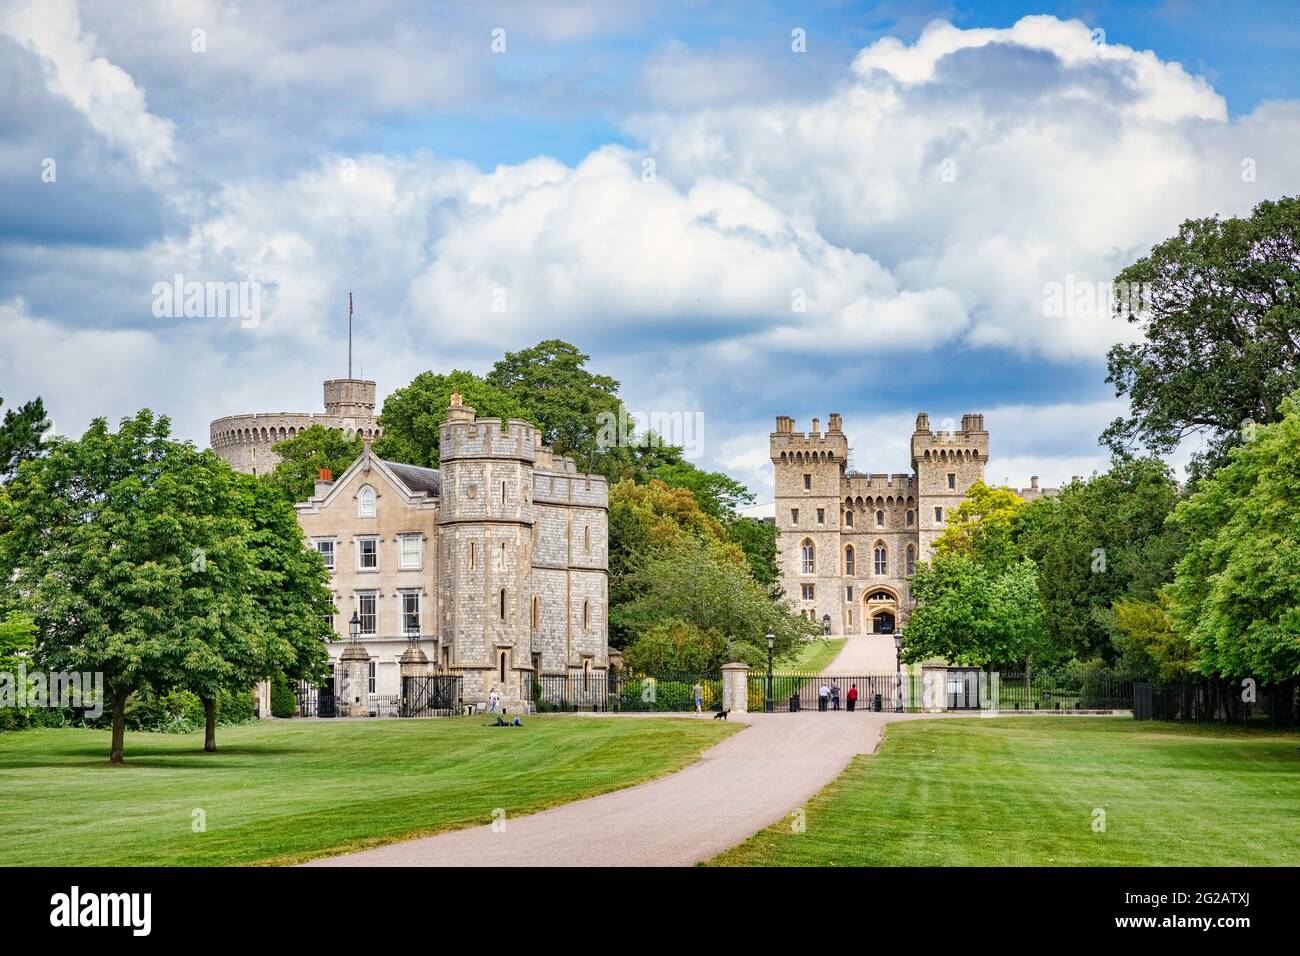 5 juin 2019 : Windsor, Berkshire, Royaume-Uni - Château de Windsor de la longue promenade dans le Grand parc de Windsor. Banque D'Images